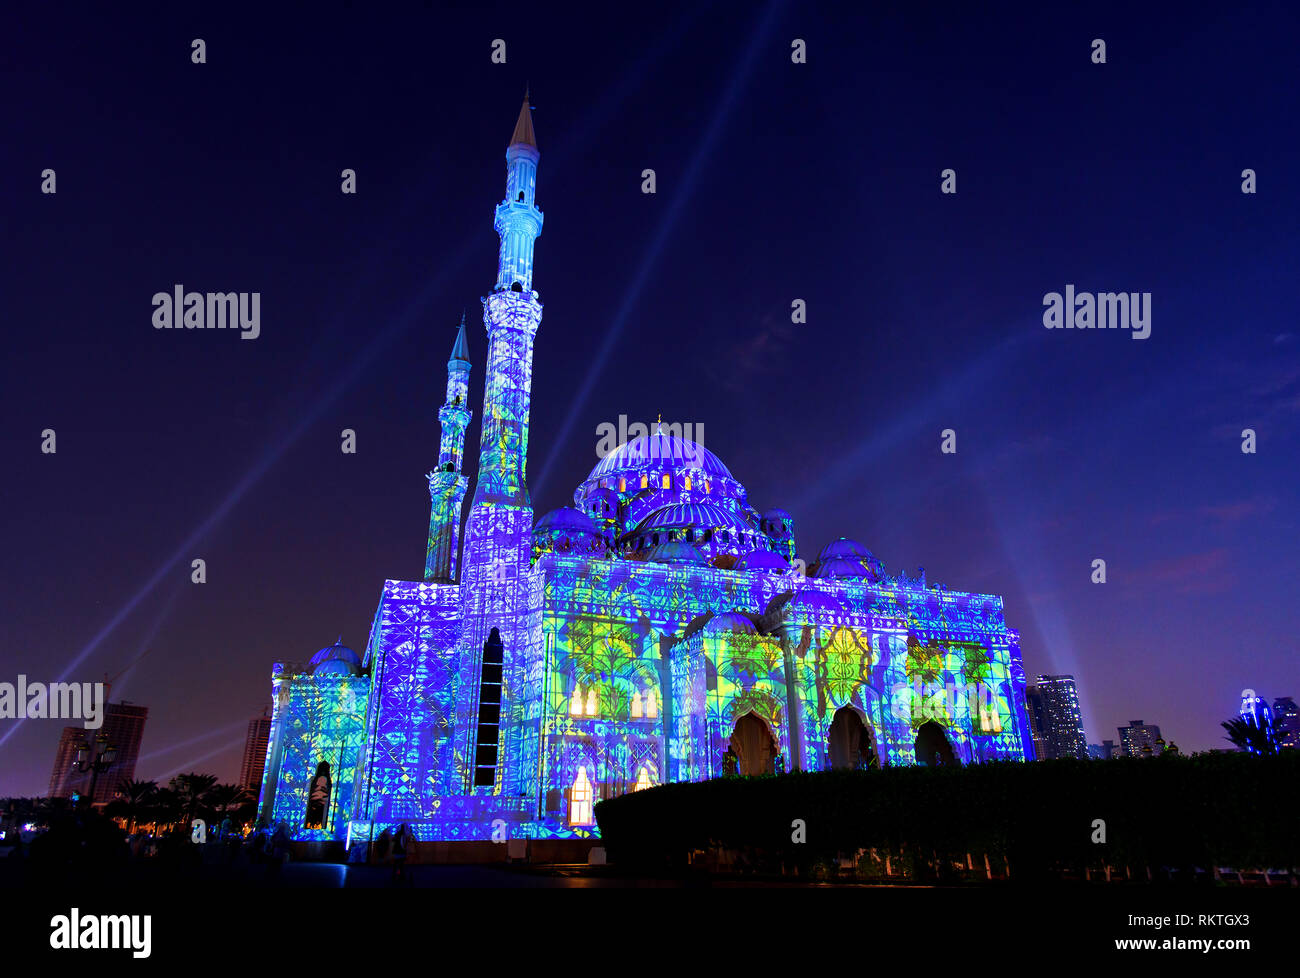 La moschea illuminata in Emirato di Sharjah durante il festival della luce Foto Stock